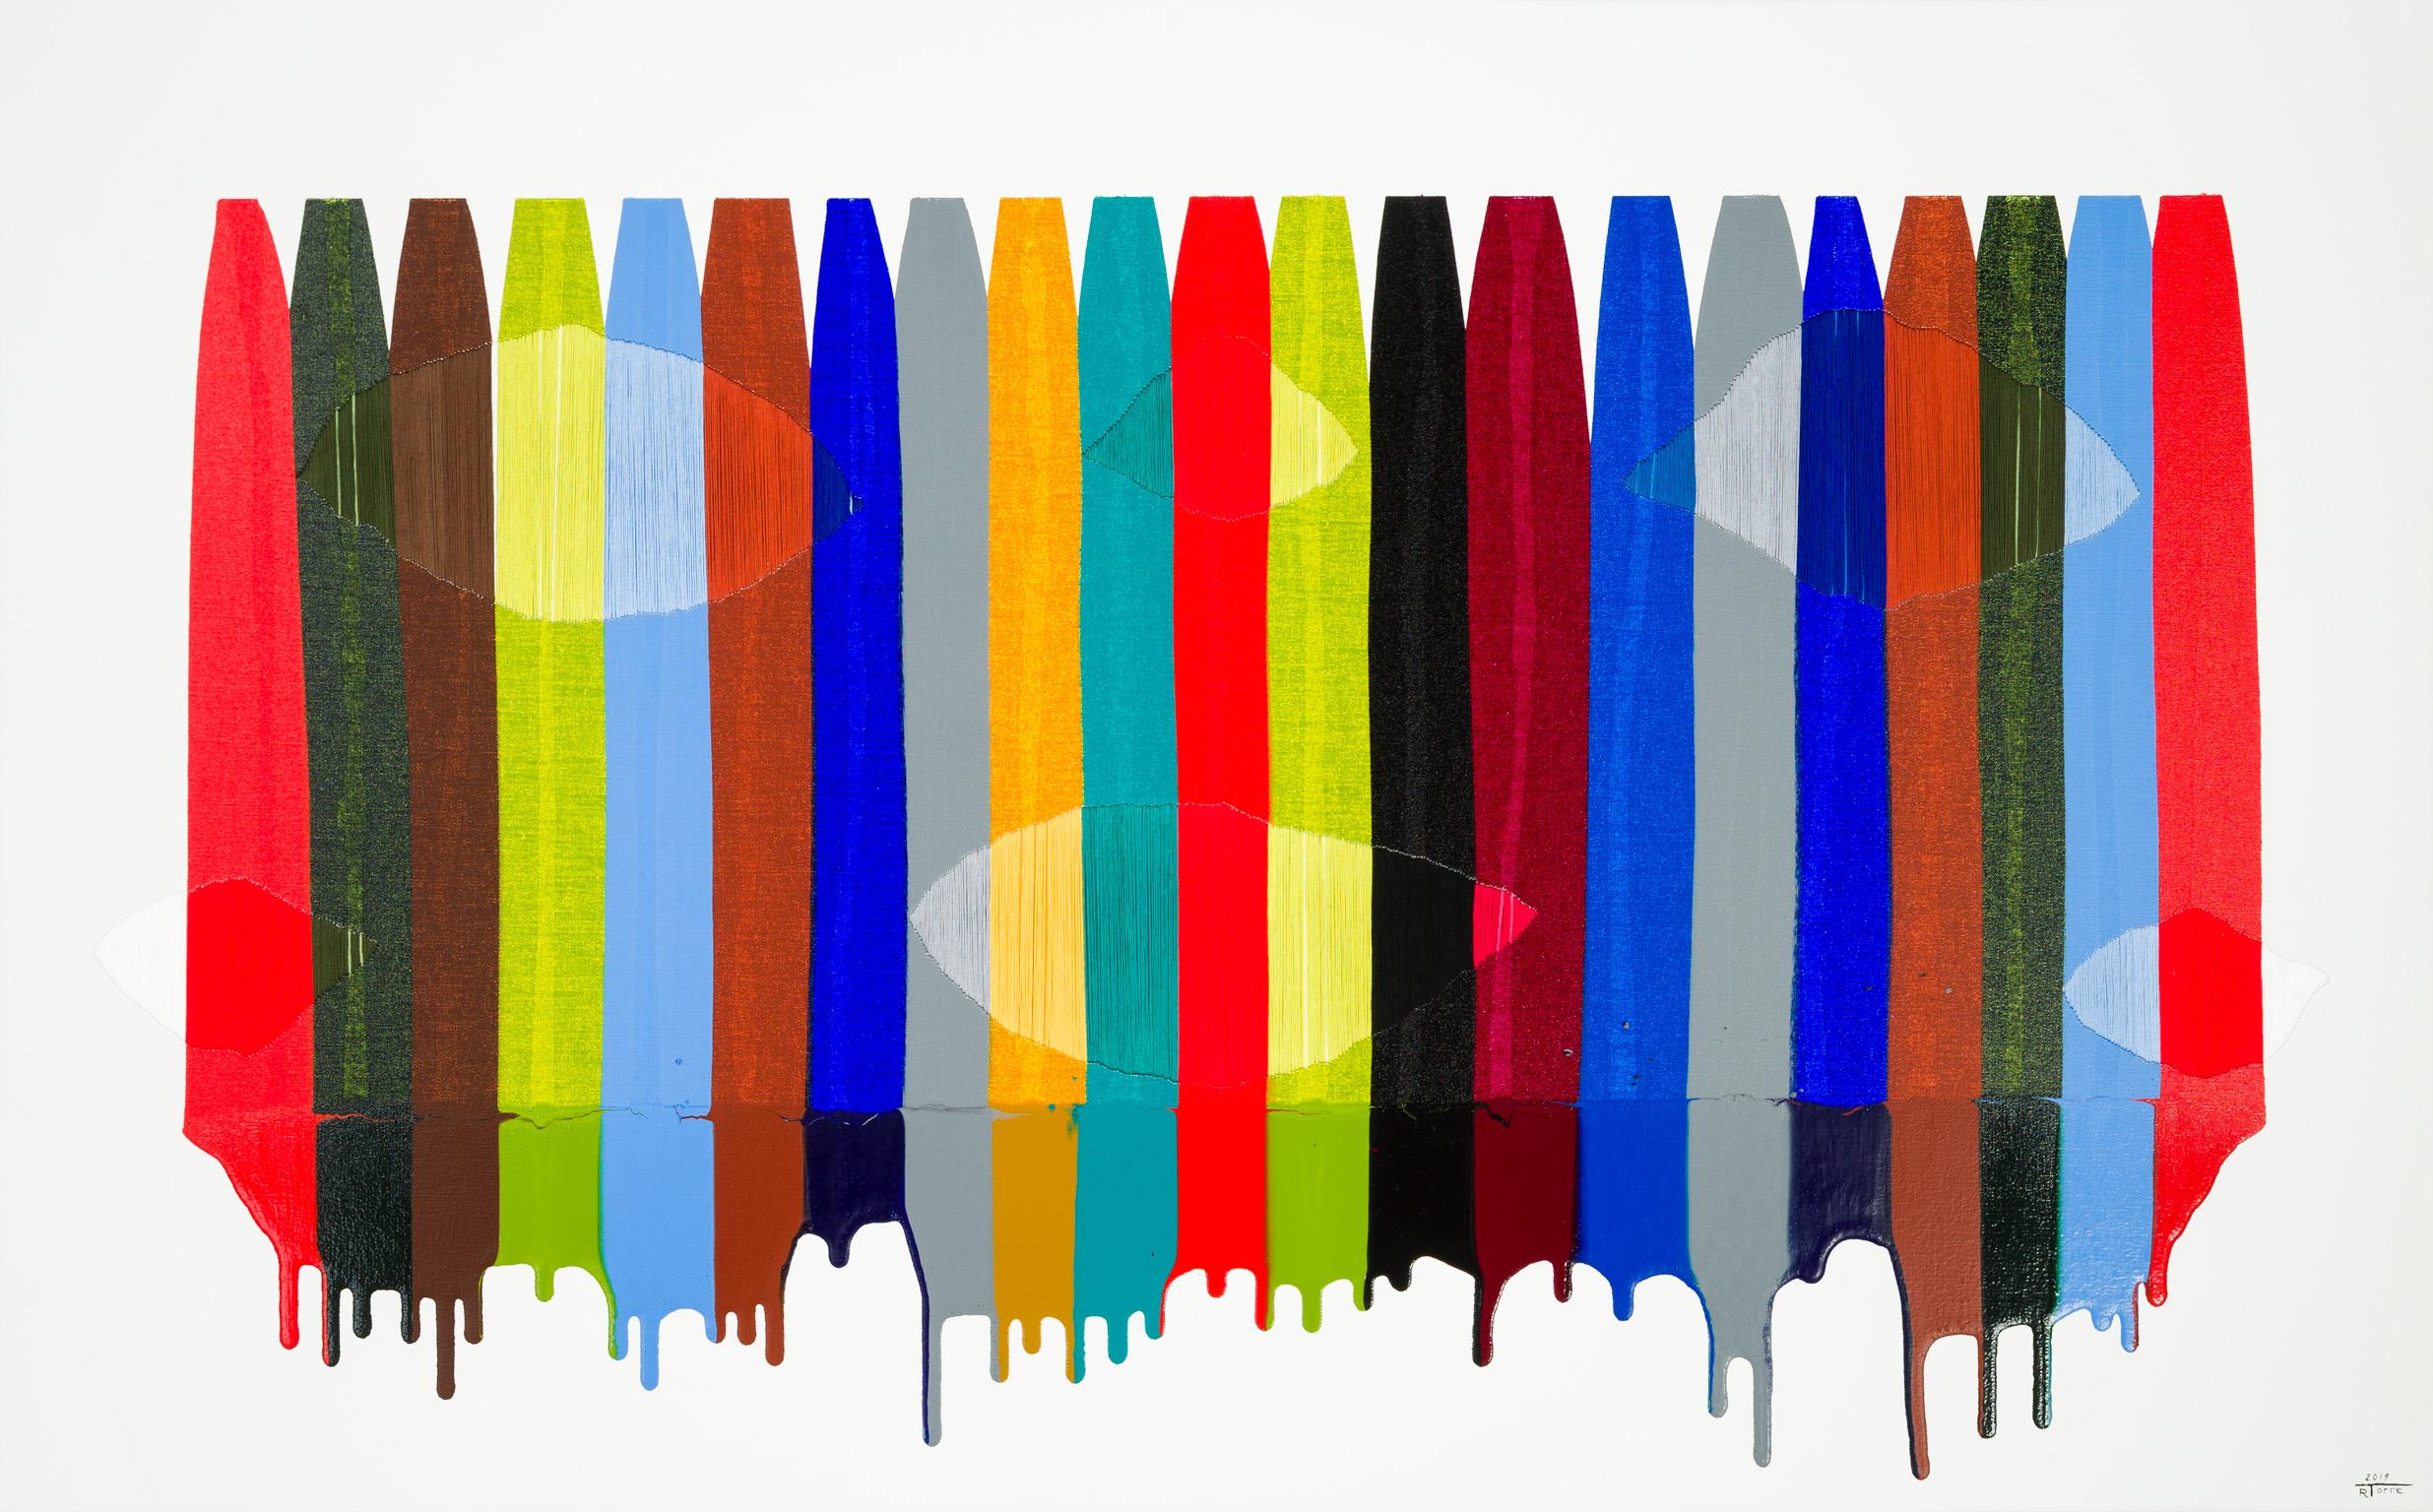 Fils I Colors CCCXCII - Abstract Mixed Media Art by Raul de la Torre